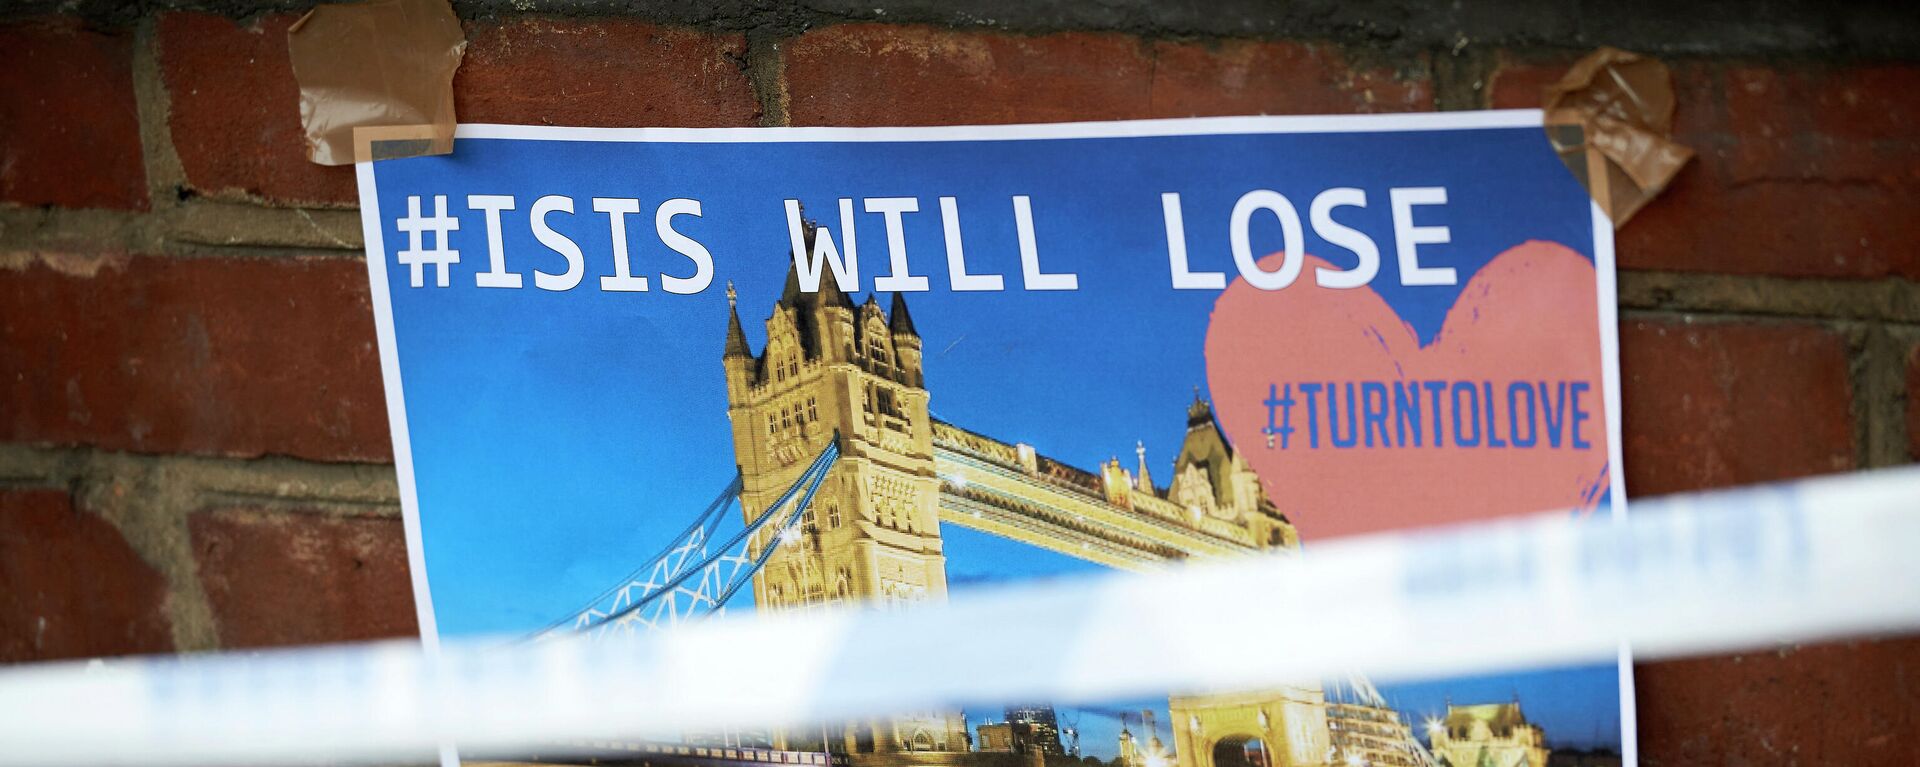 Britanya'nın başkenti Londra'da 3 Haziran 2017'de düzenlenen terör saldırısının ardından duvara asılan IŞİD yenilecek, sevgi kazanacak yazılı poster - Sputnik Türkiye, 1920, 27.08.2021